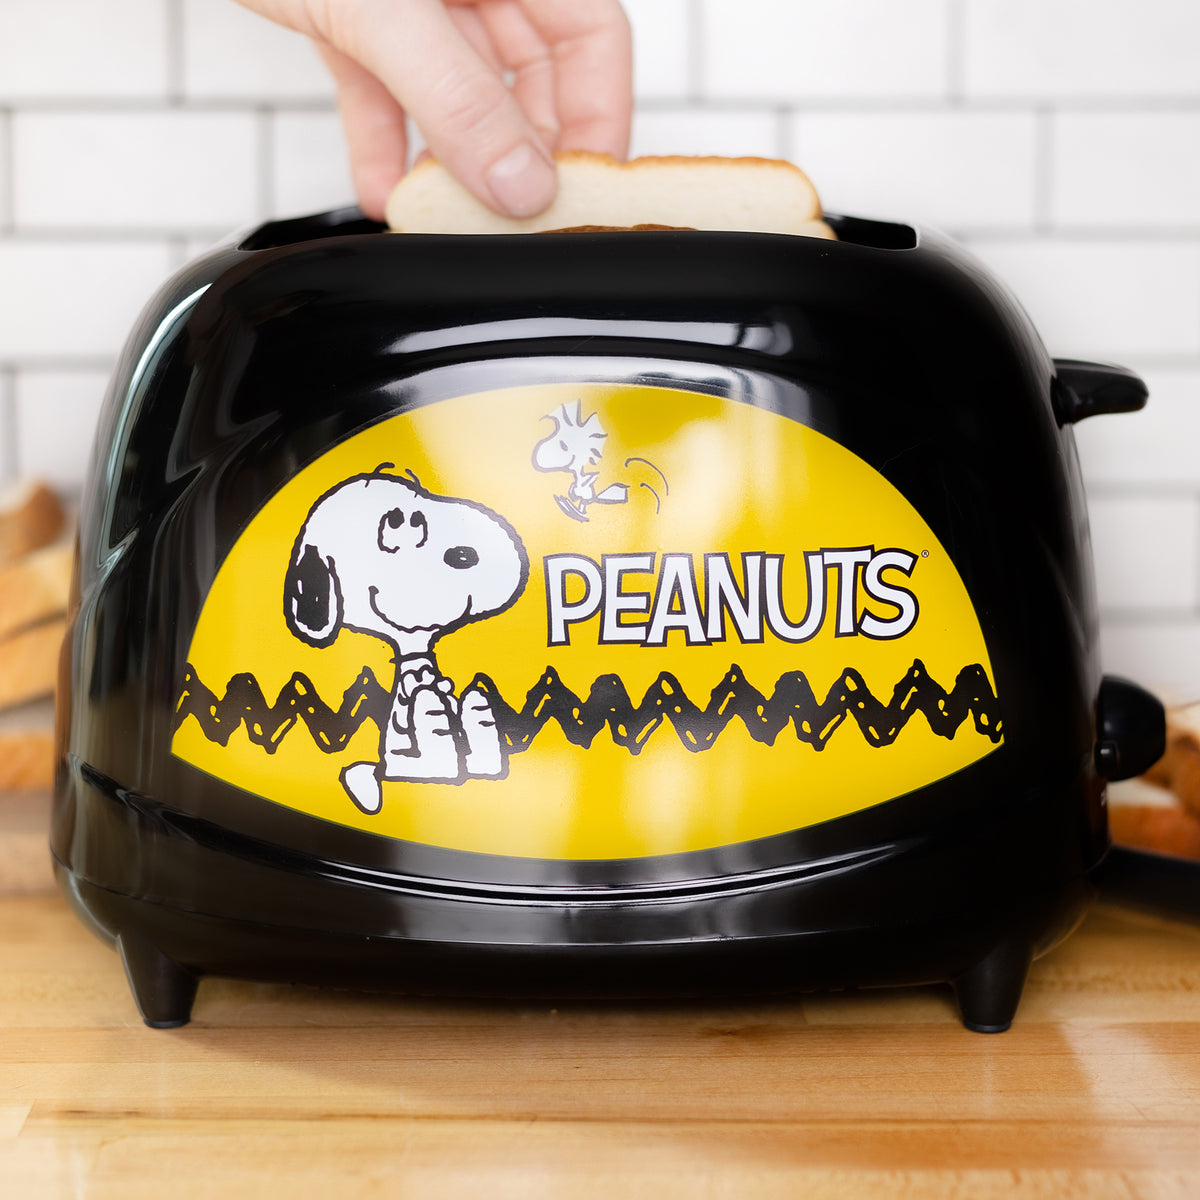 Peanuts Snoopy Toaster